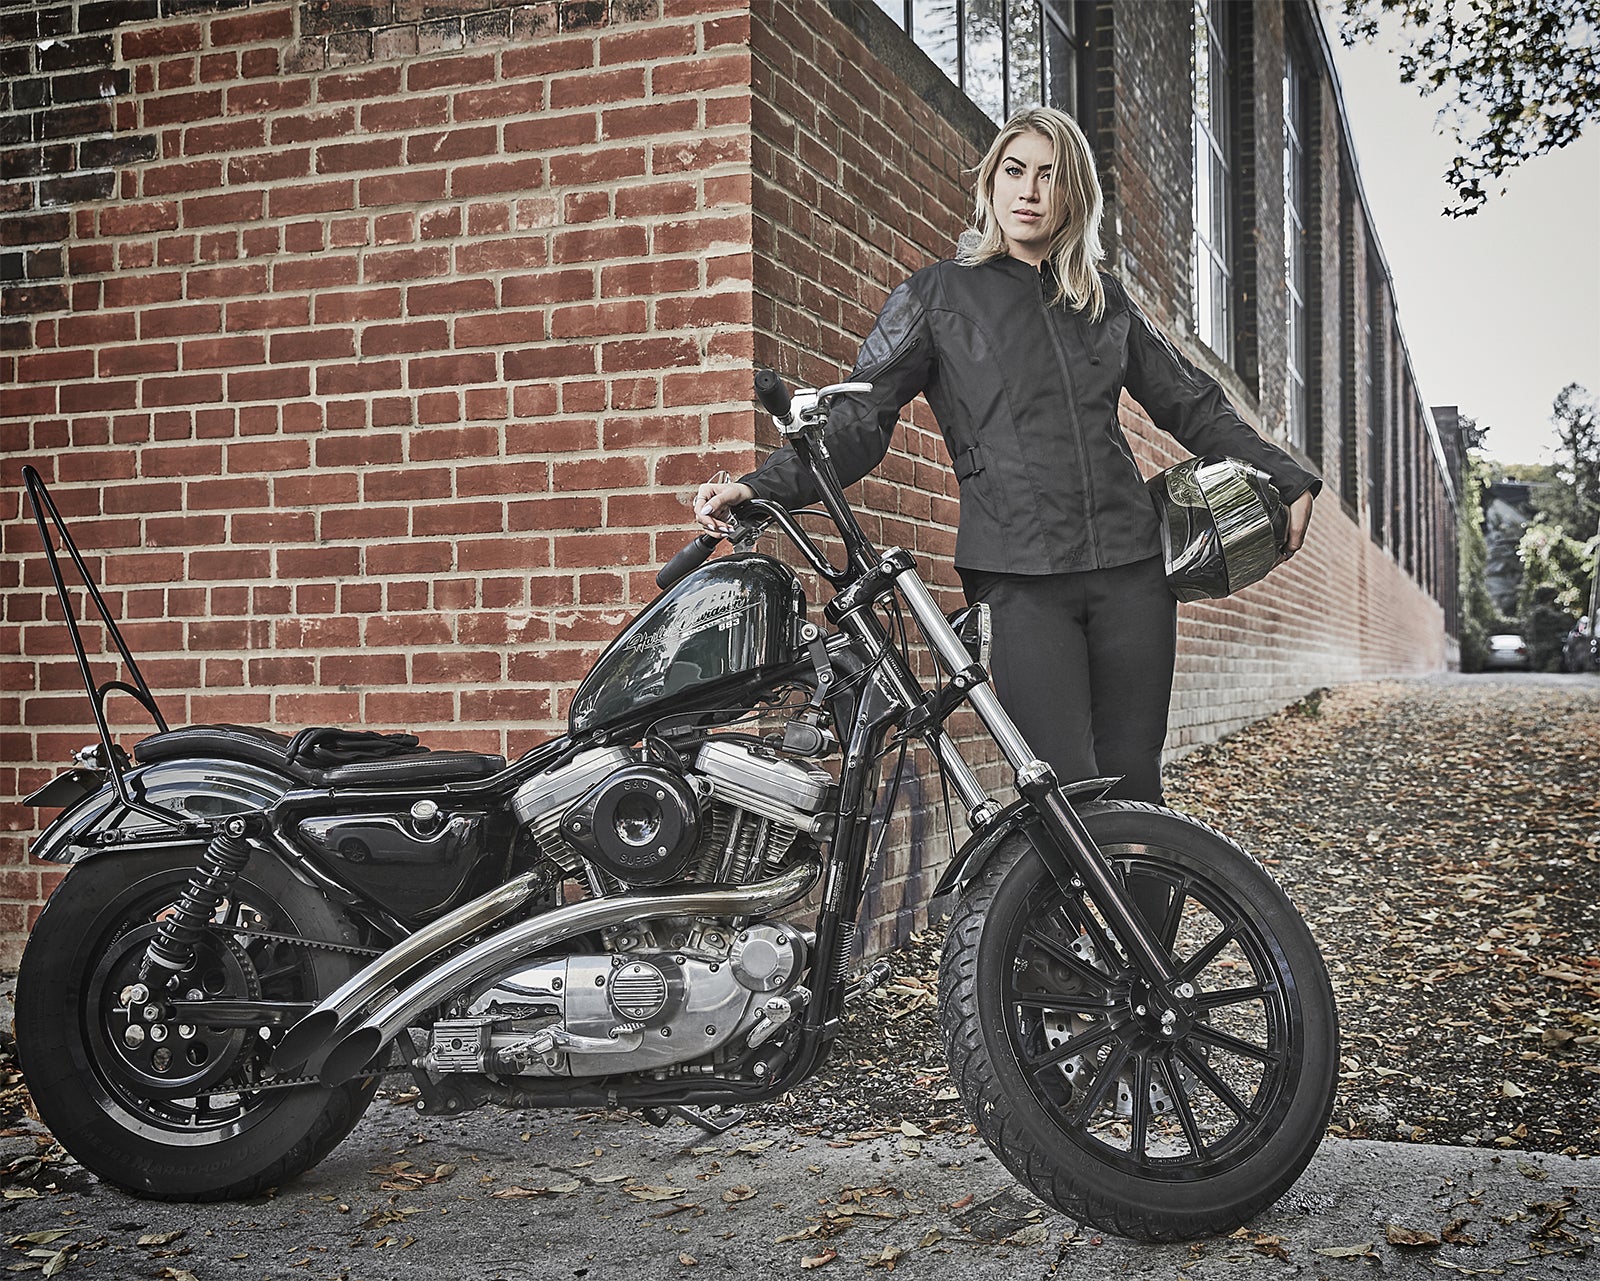 Harley-Davidson Women's Helm Leather Work Gloves, Black - Large